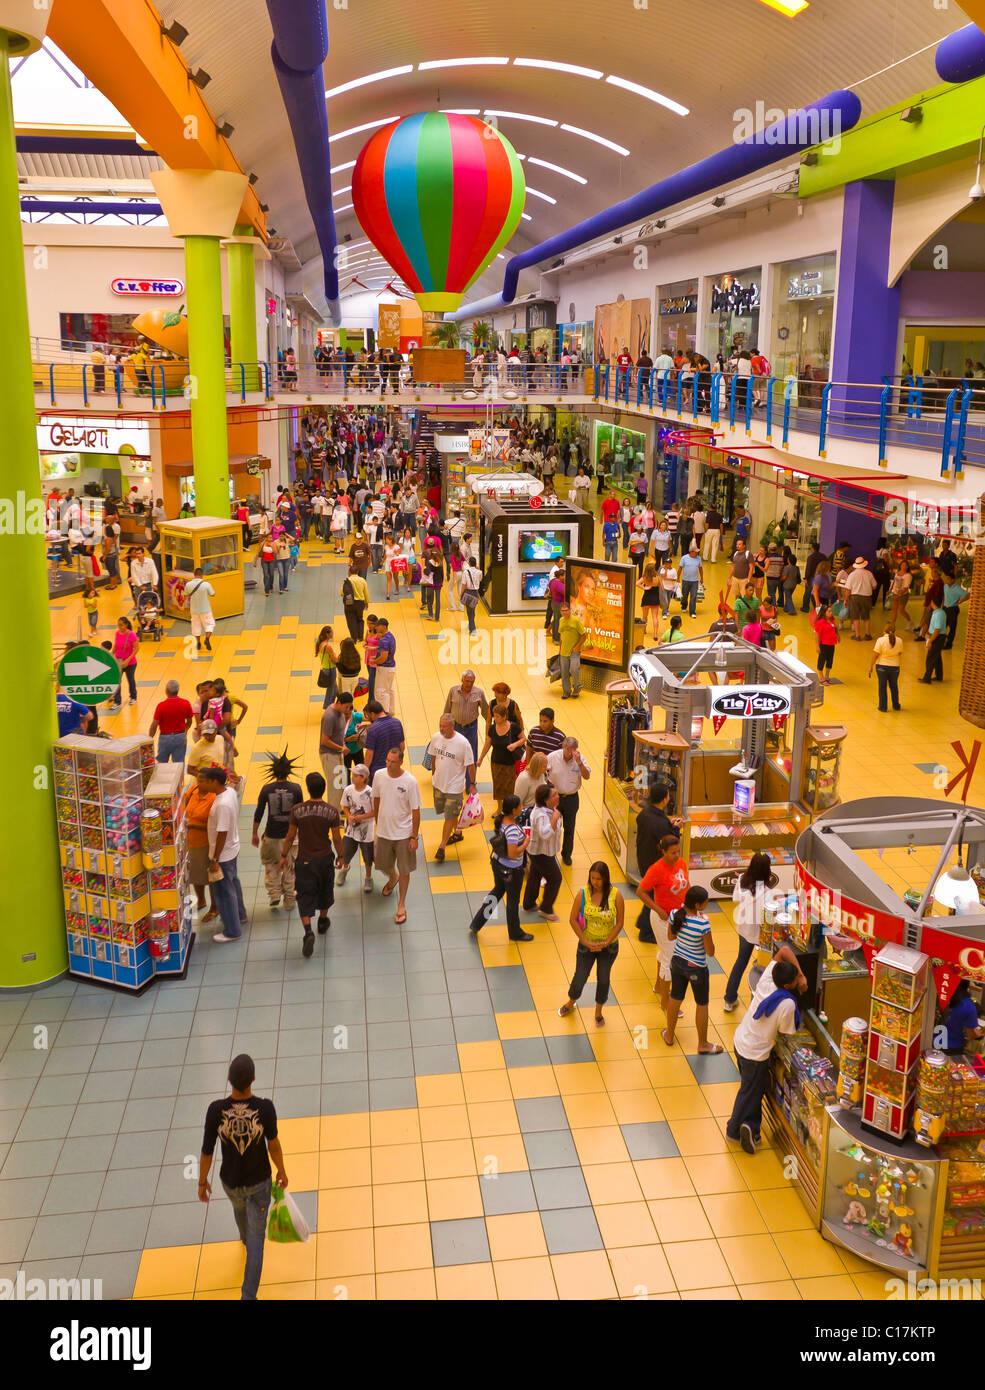 PANAMA CITY, PANAMA - Albrook shopping mall Stock Photo